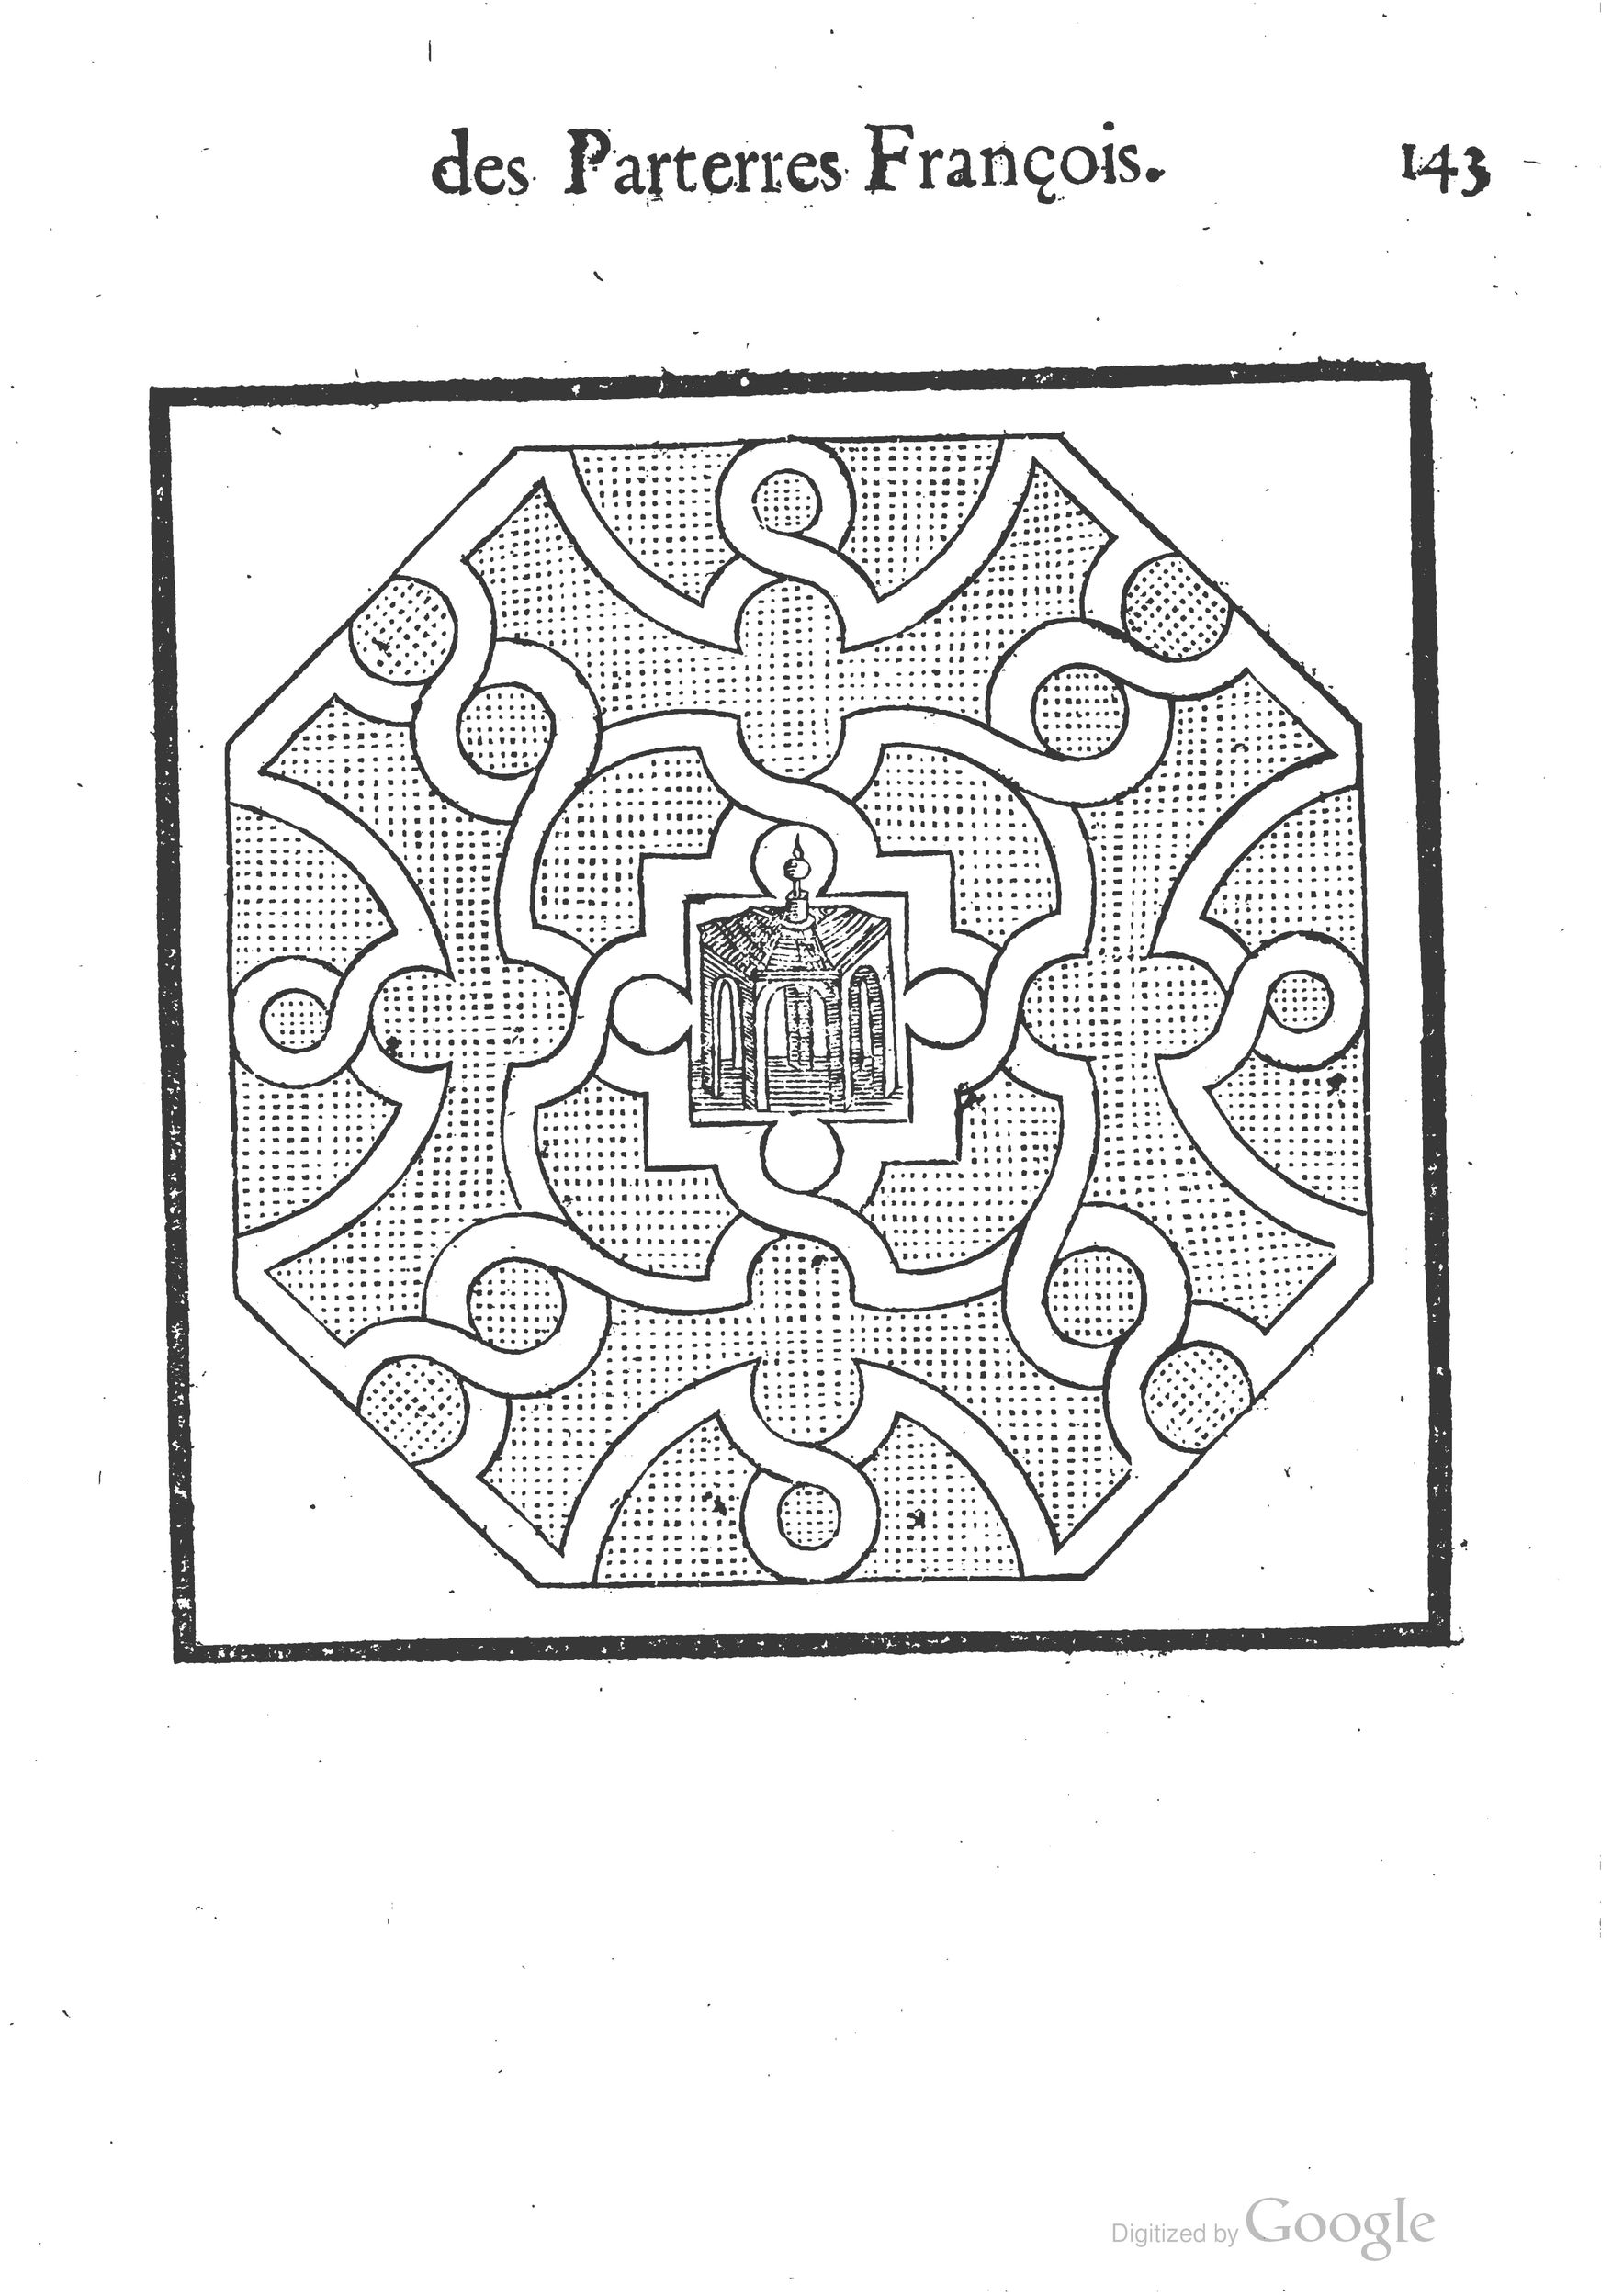 1629 Trésor des parterres de l'univers Gamonet_BM Lyon_Page_176.jpg